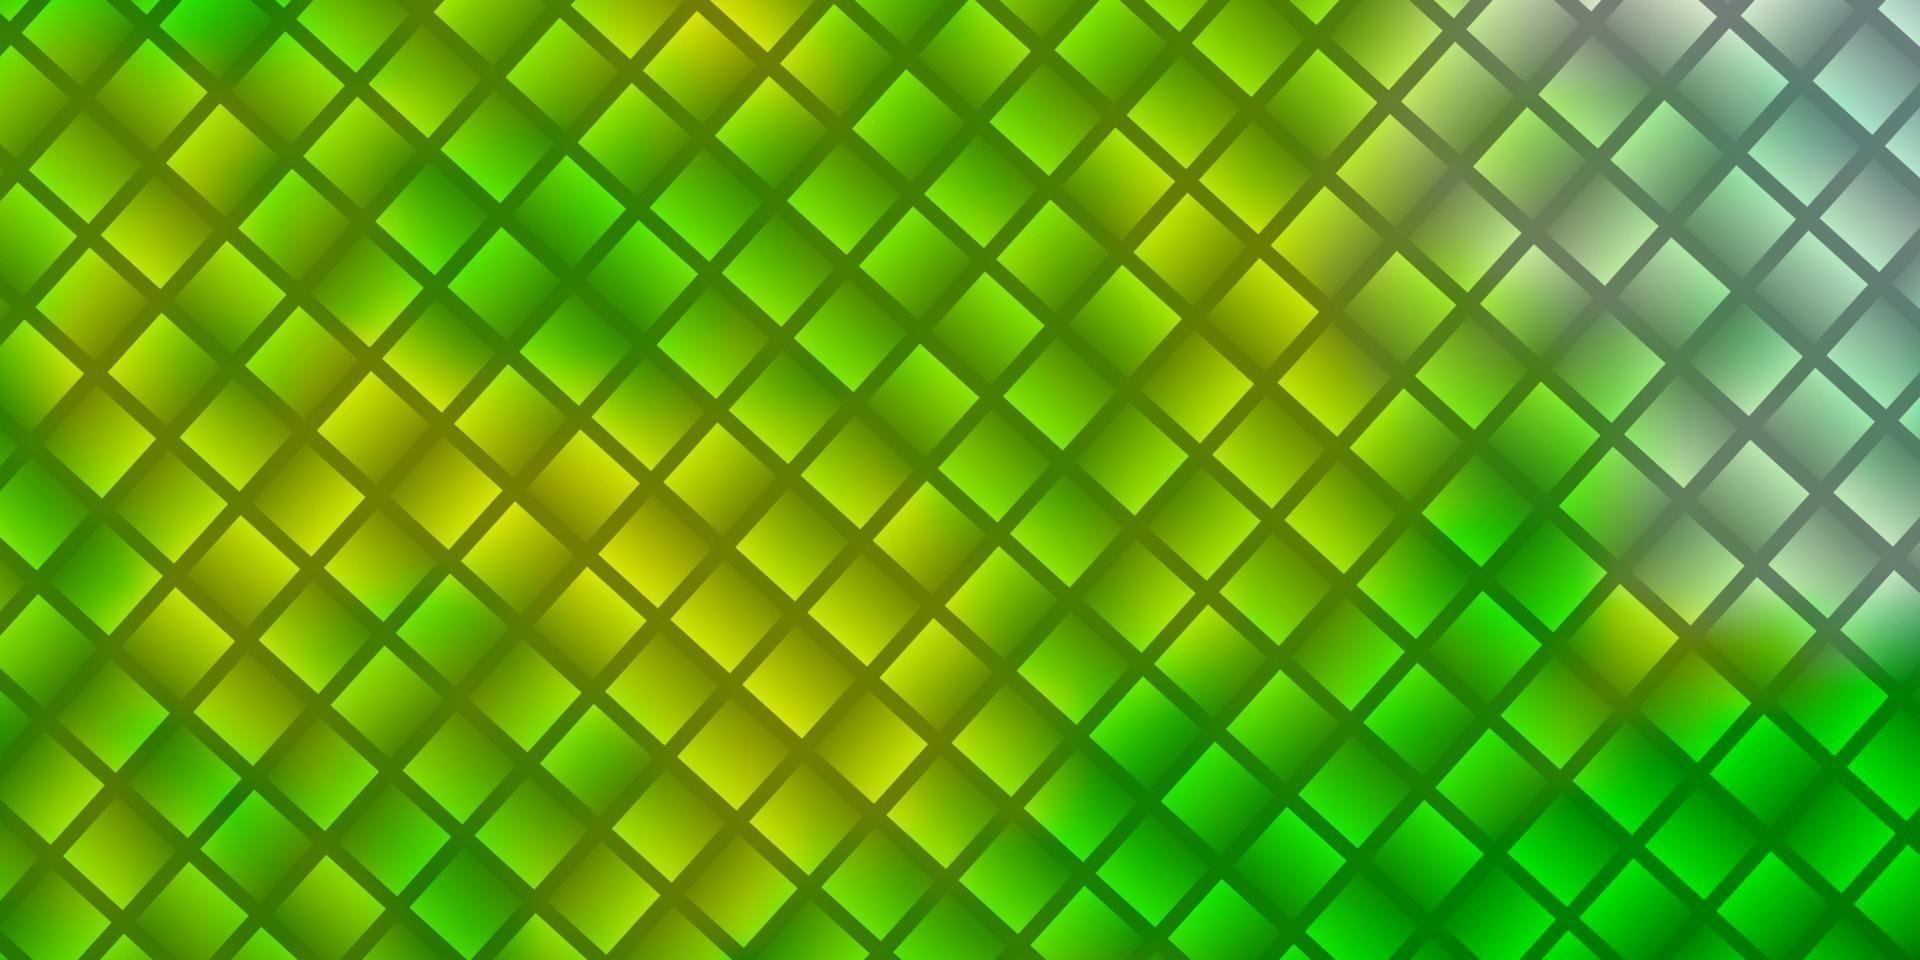 ljusgrön, gul vektorstruktur i rektangulär stil. vektor